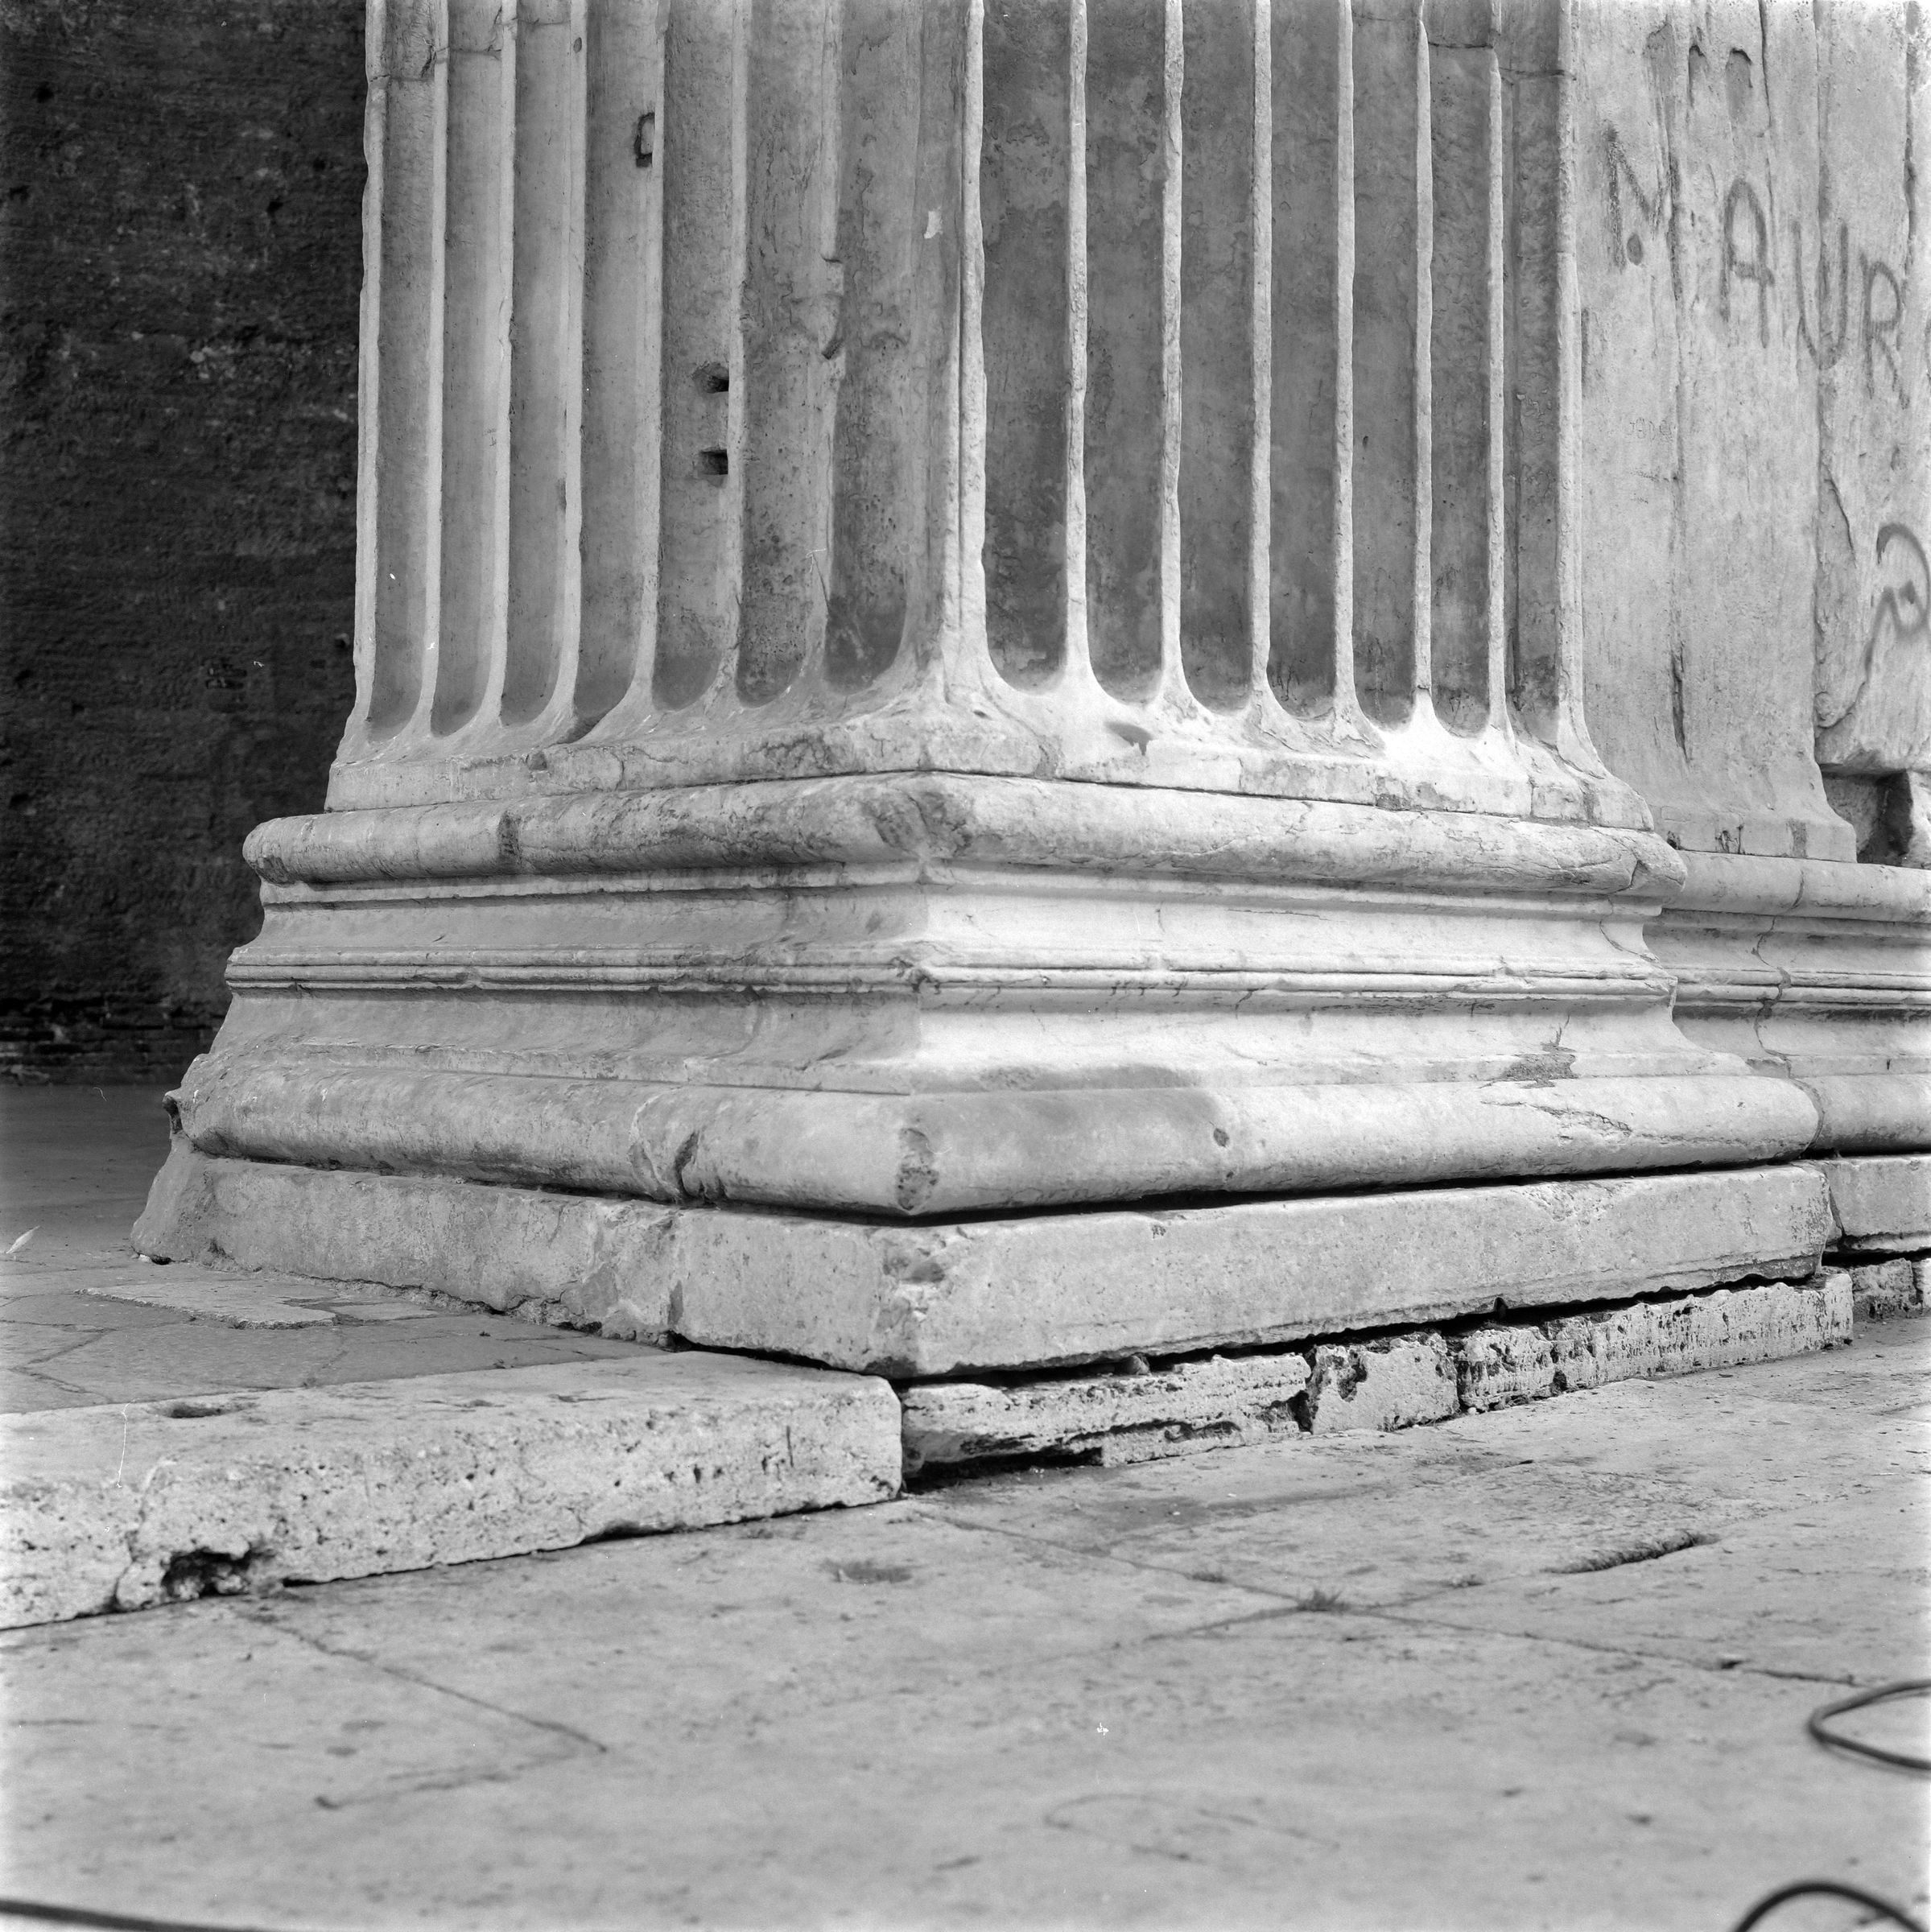 Fotografo non identificato, Roma - Pantheon,1951-2000, gelatina ai sali d'argento, 6x6 cm, N077953